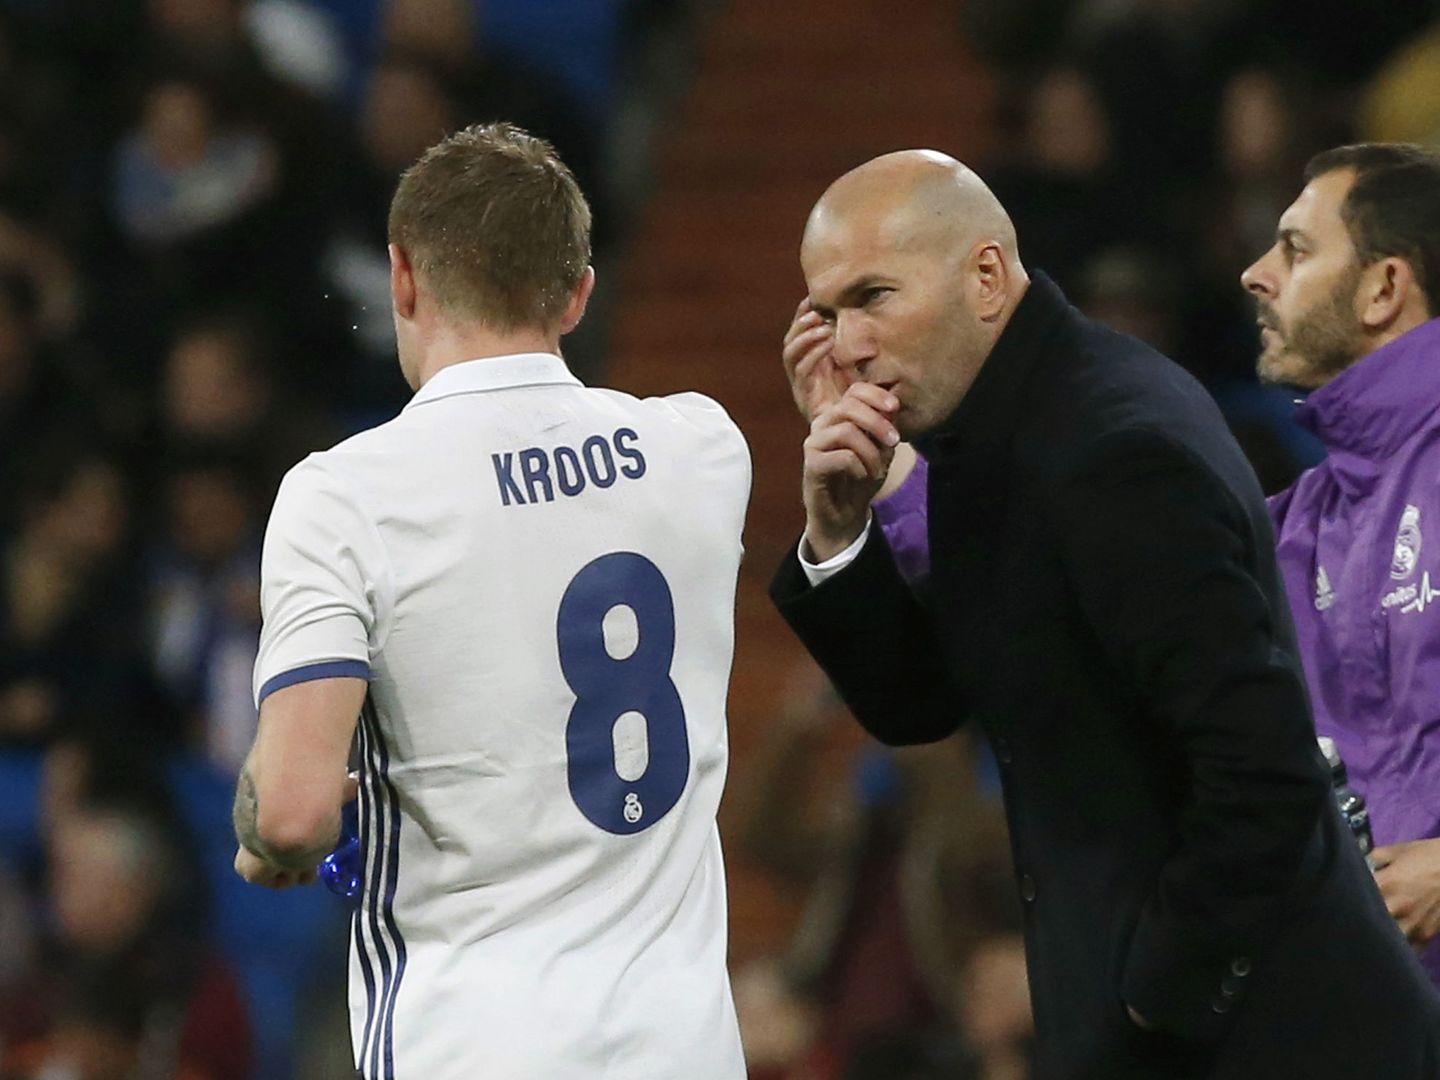 Zidane da instrucciones a Kroos durante un partido. (EFE)